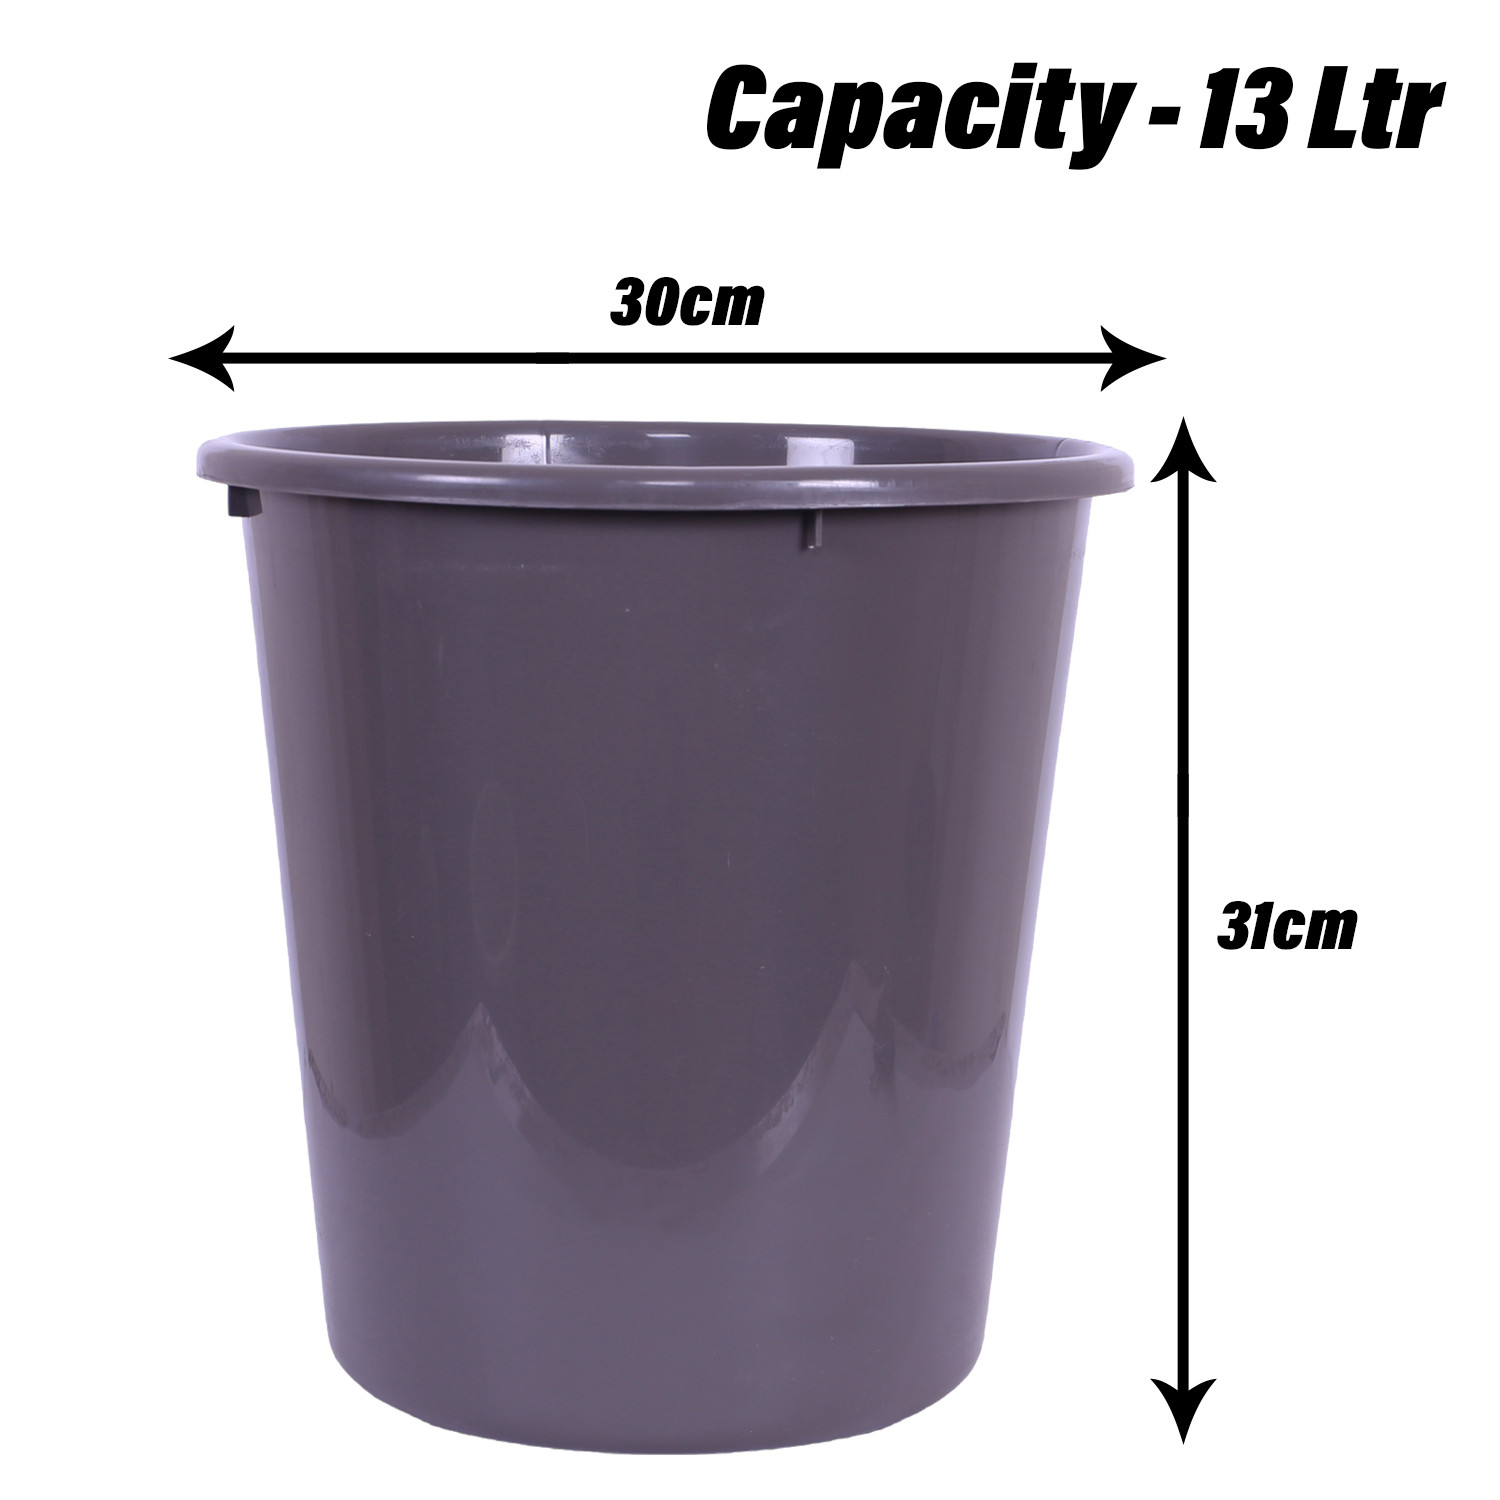 Kuber Industries Dustbin | Open Dustbin | Plastic Garbage Dustbin | Dustbin For Kitchen | Dustbin For Bathroom | Office Dustbin | Plain Sada Dustbin | 13 LTR | Gray